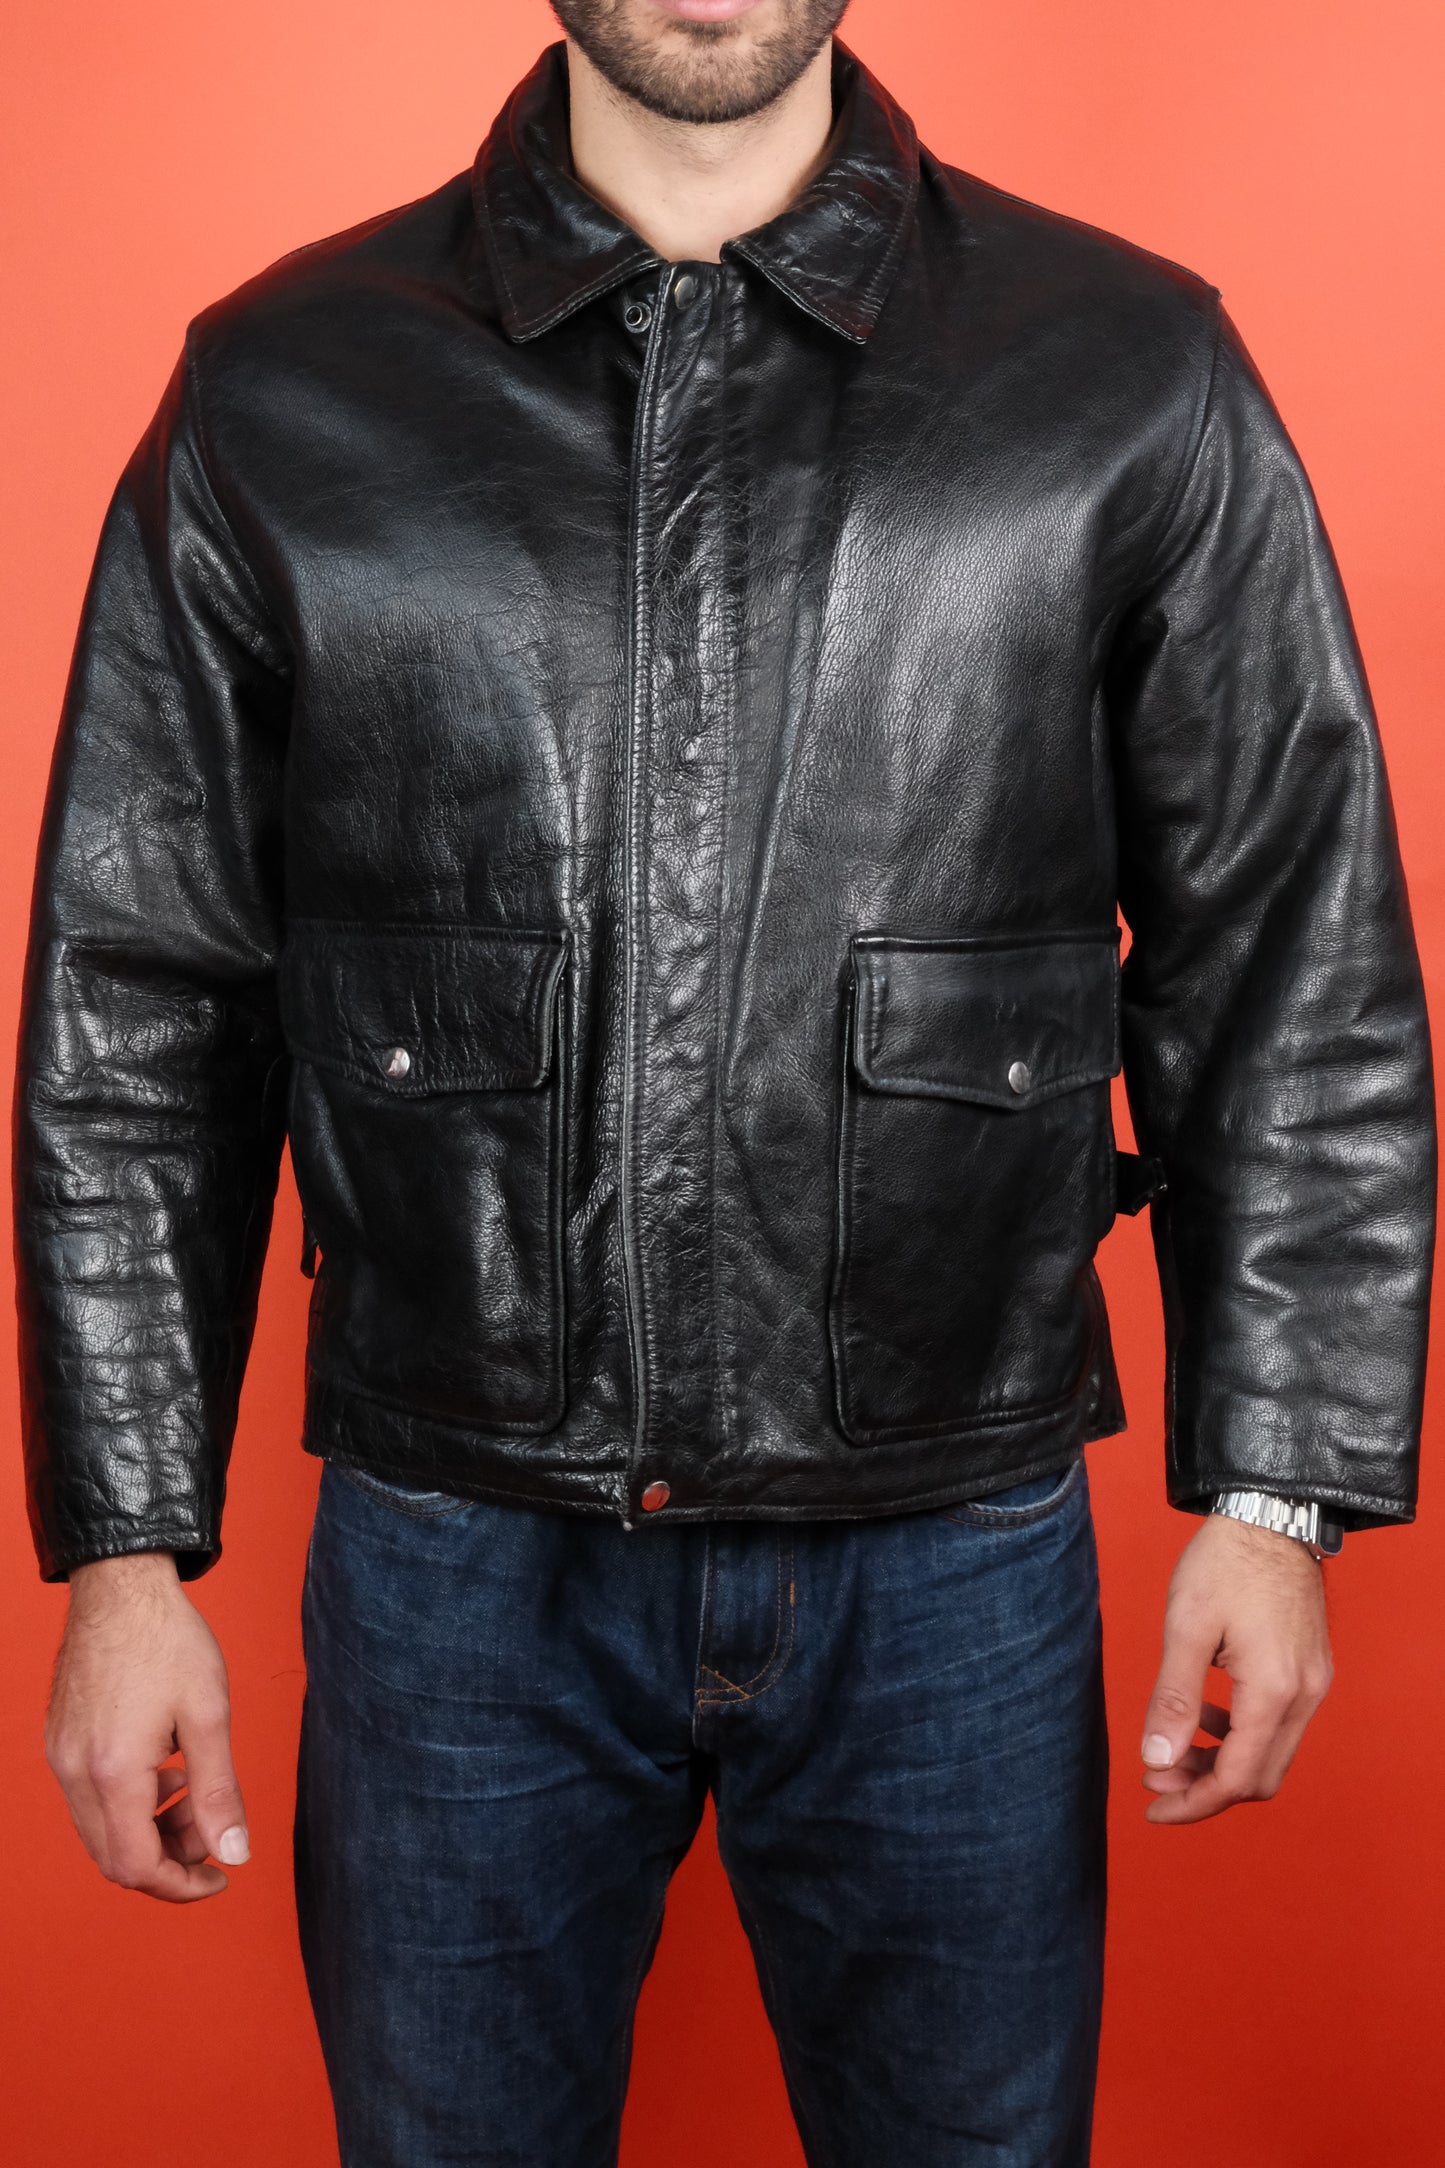 Black Leather Jacket 'L' - vintage clothing clochard92.com